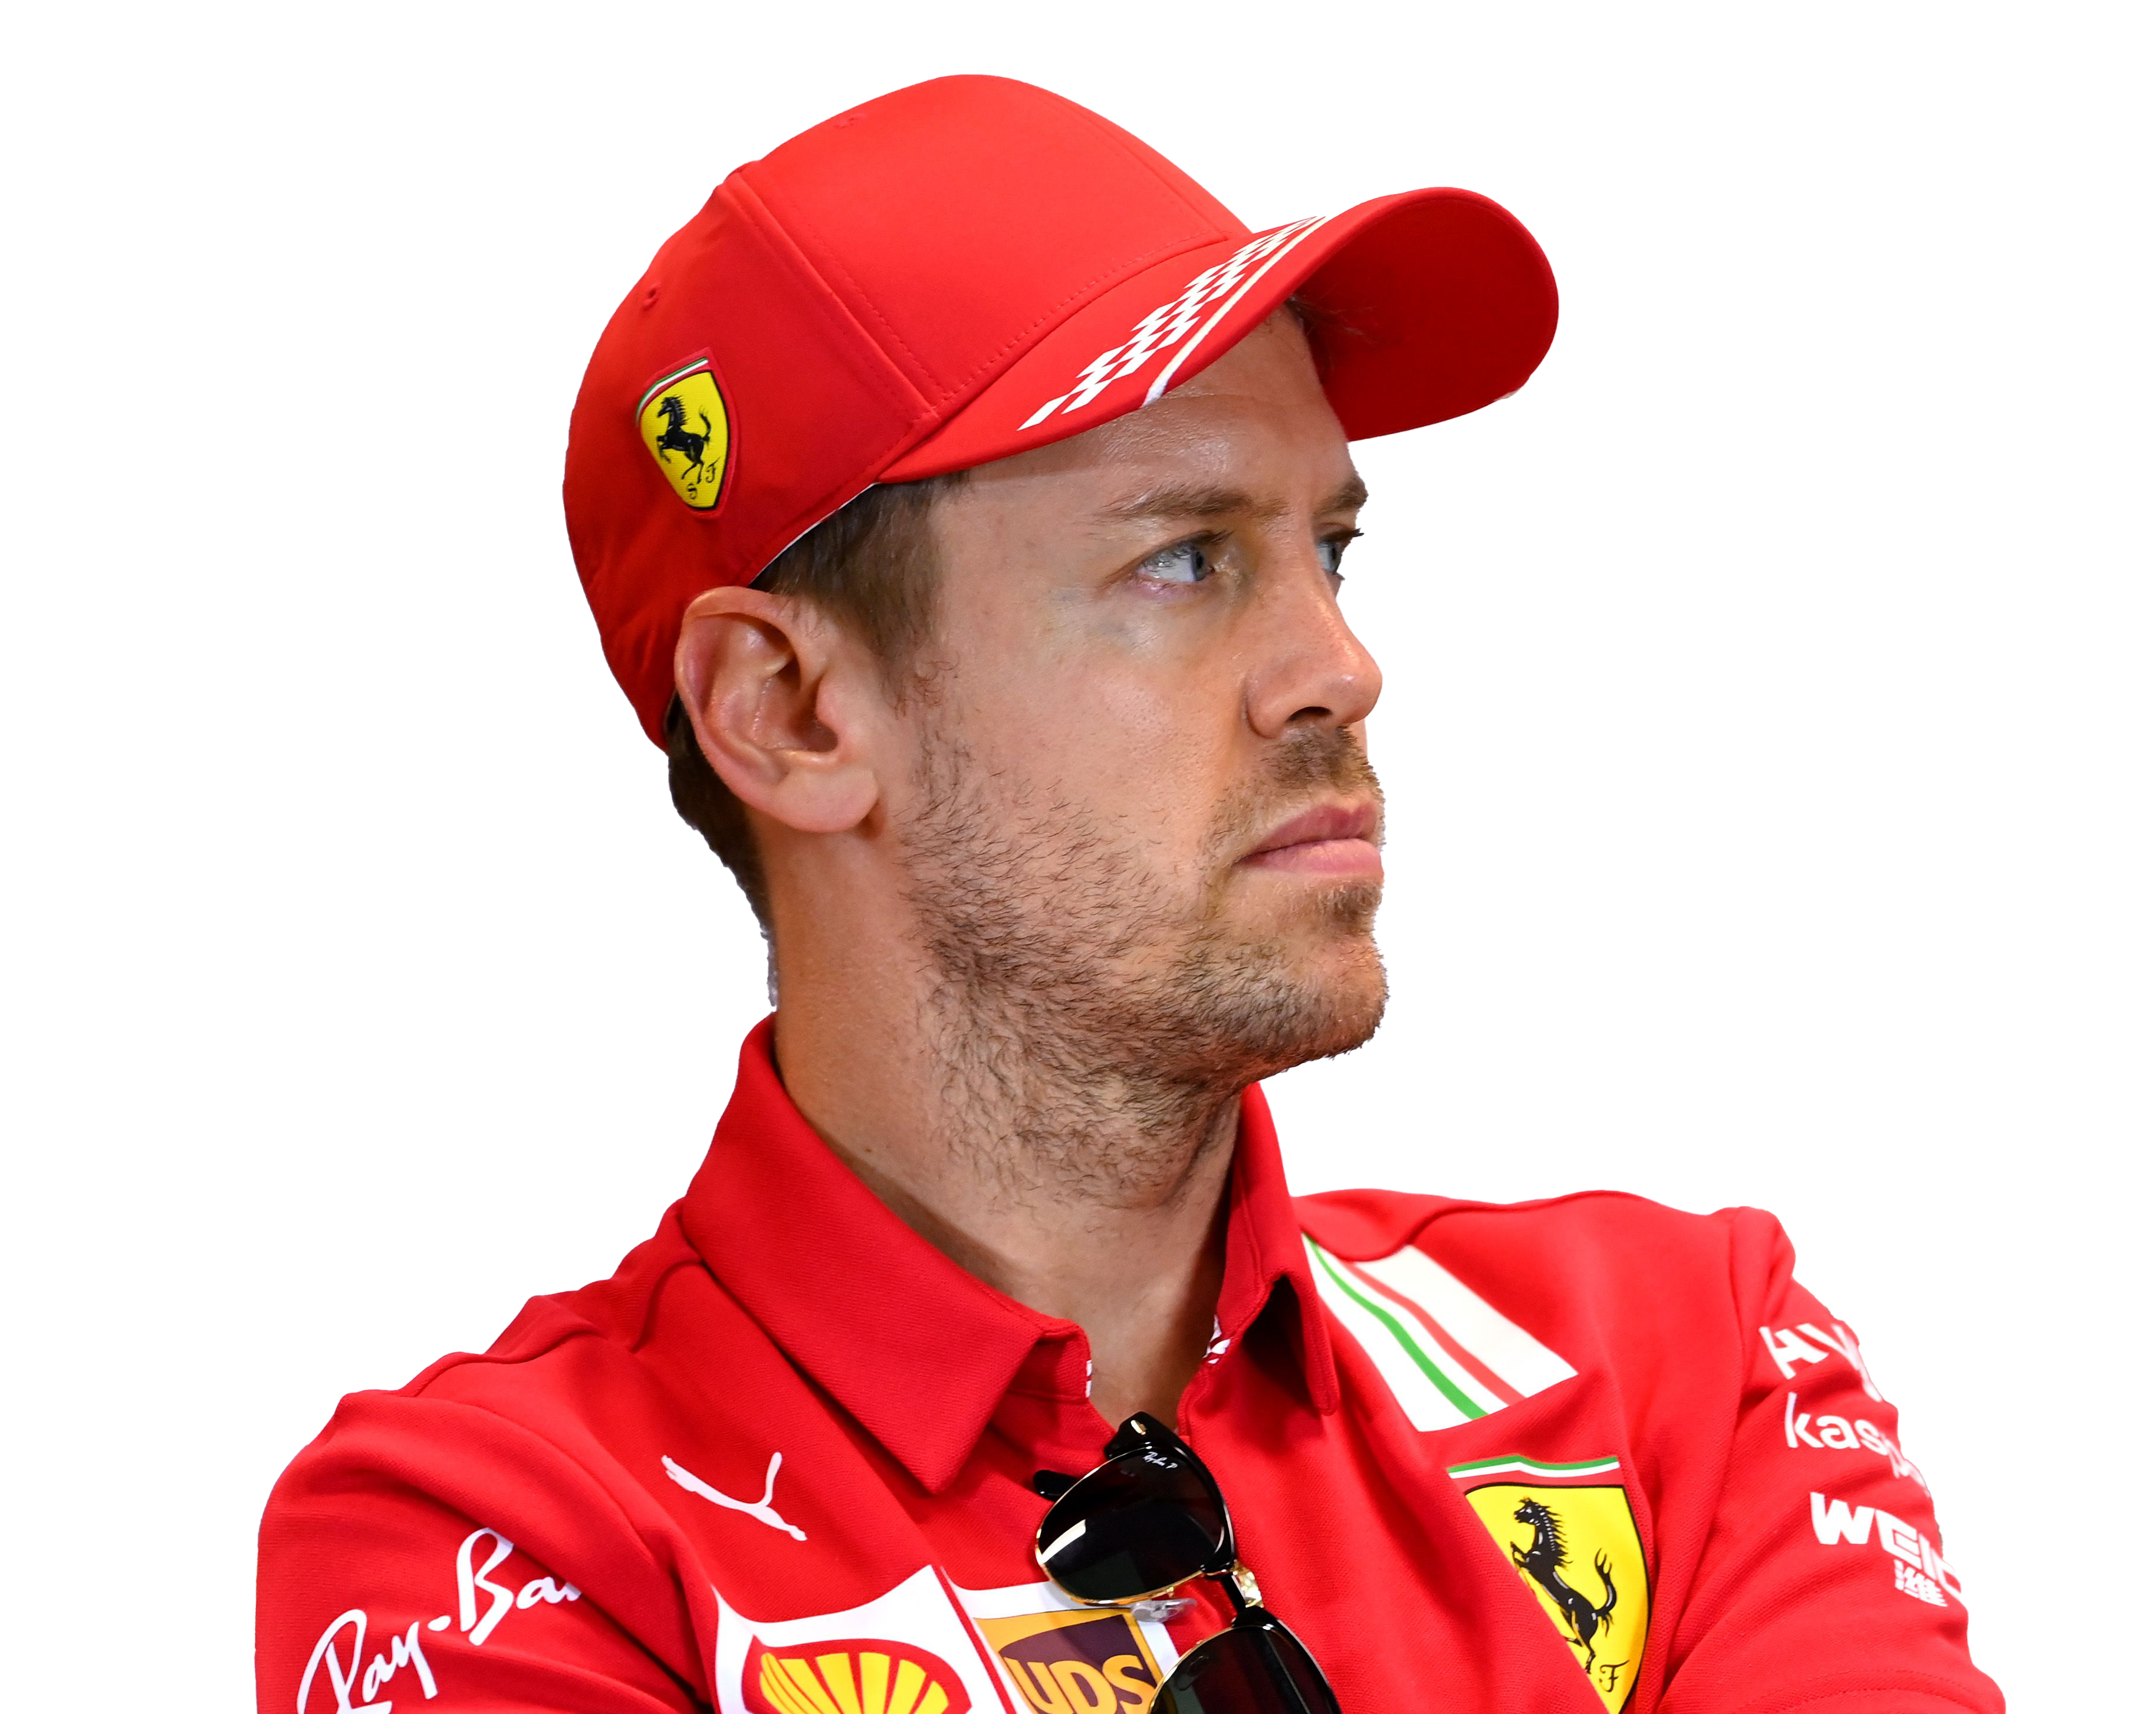 Sebastian Vettel PNG Image Background